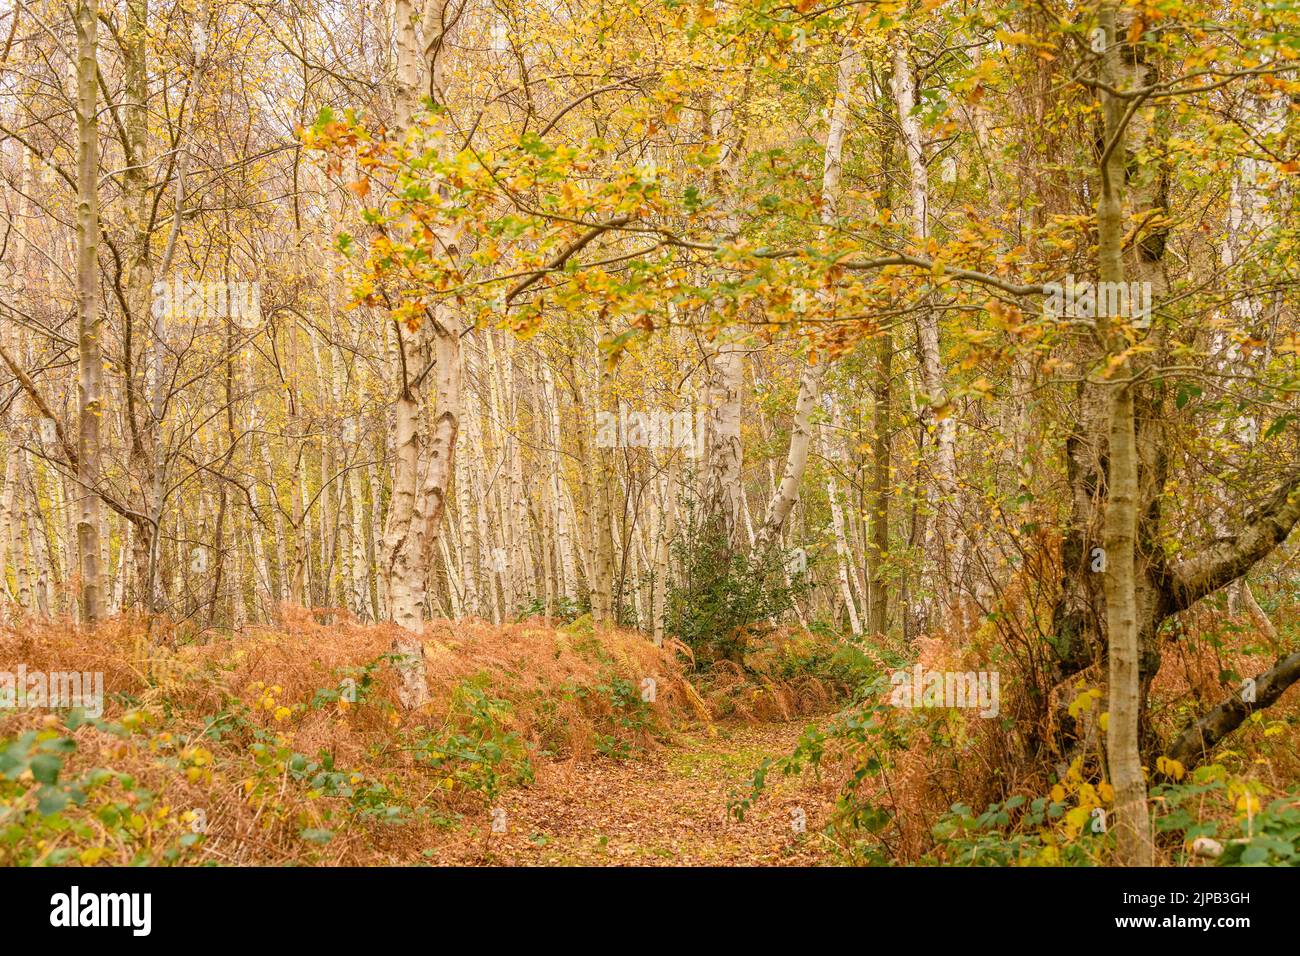 Ein schöner Blick auf einen unberührten Wald in herbstlichen Farben mit gefallenen Blättern Stockfoto